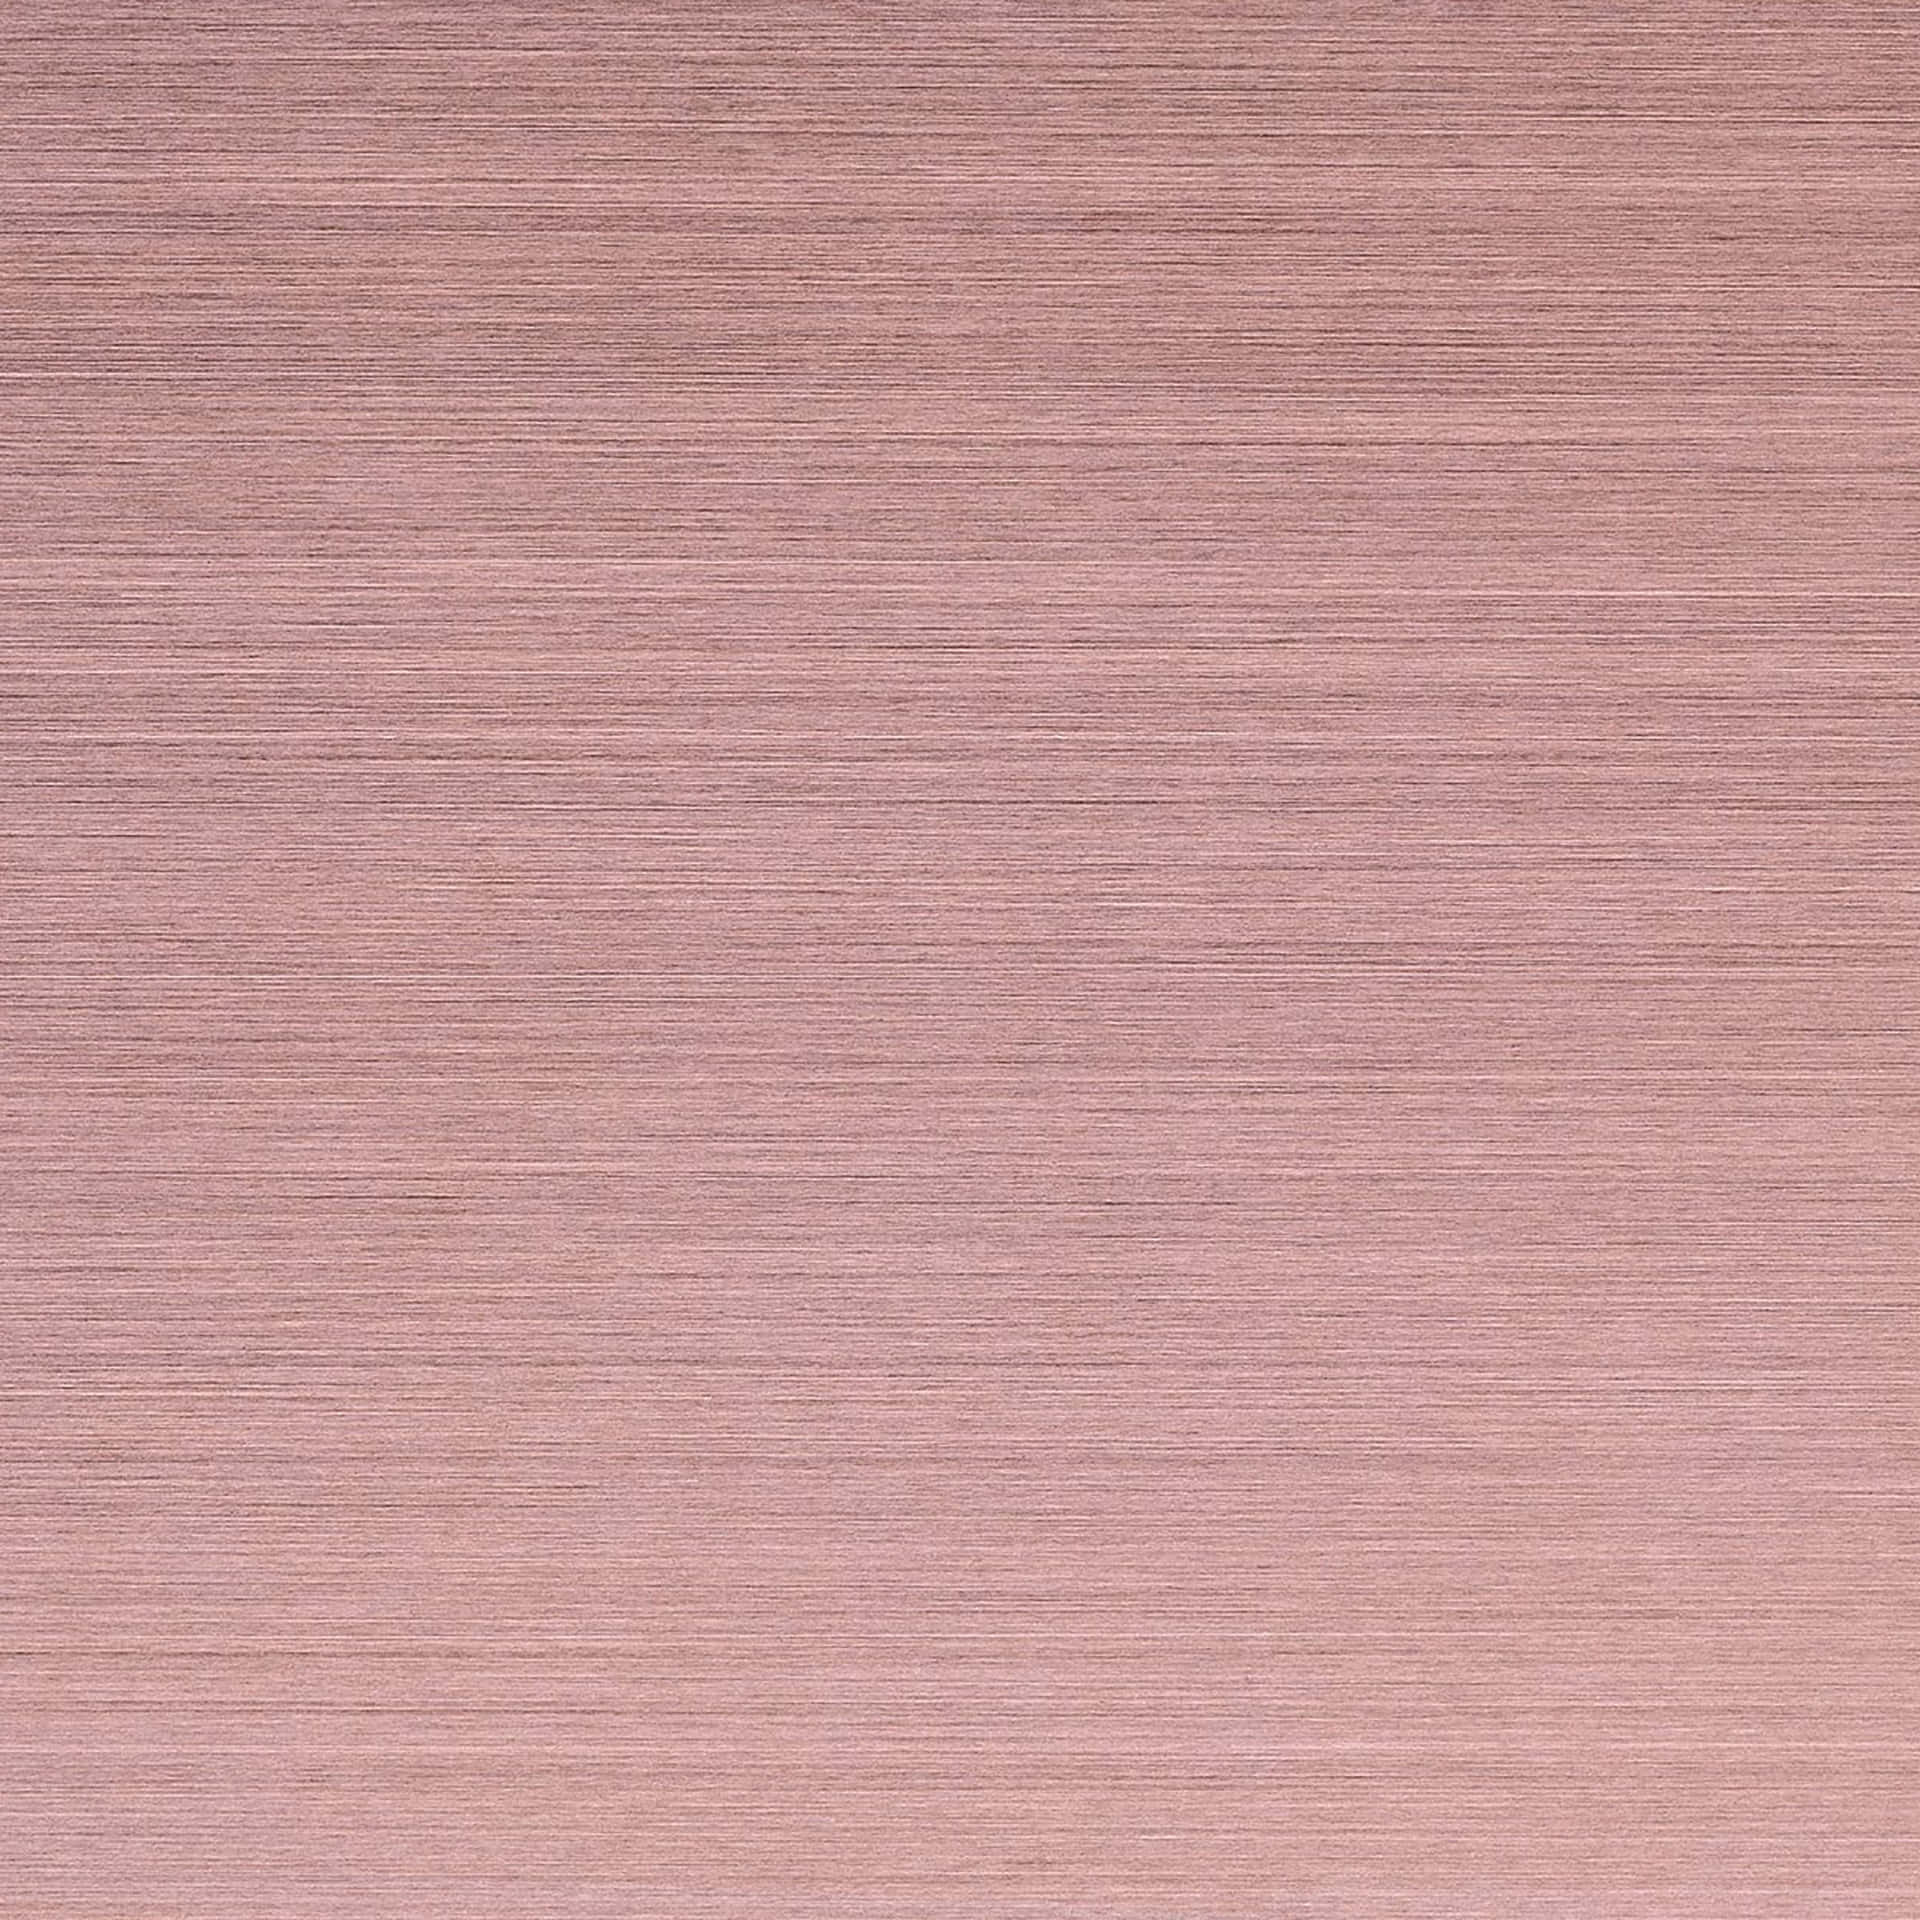 Einapple Ipad In Wunderschönem Pink. Wallpaper